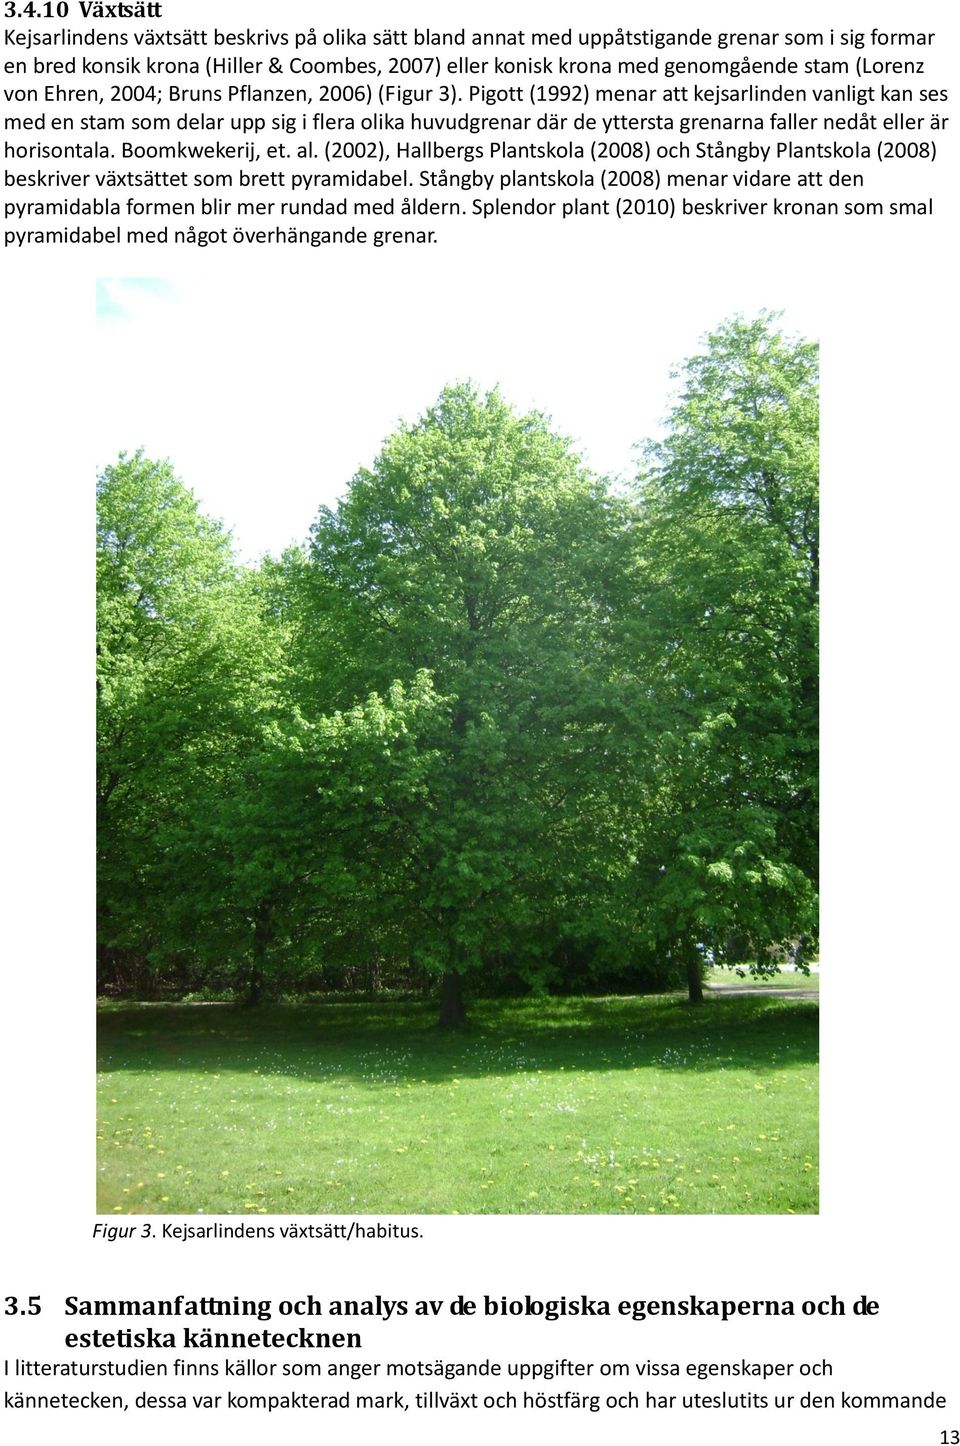 Pigott (1992) menar att kejsarlinden vanligt kan ses med en stam som delar upp sig i flera olika huvudgrenar där de yttersta grenarna faller nedåt eller är horisontala. Boomkwekerij, et. al.